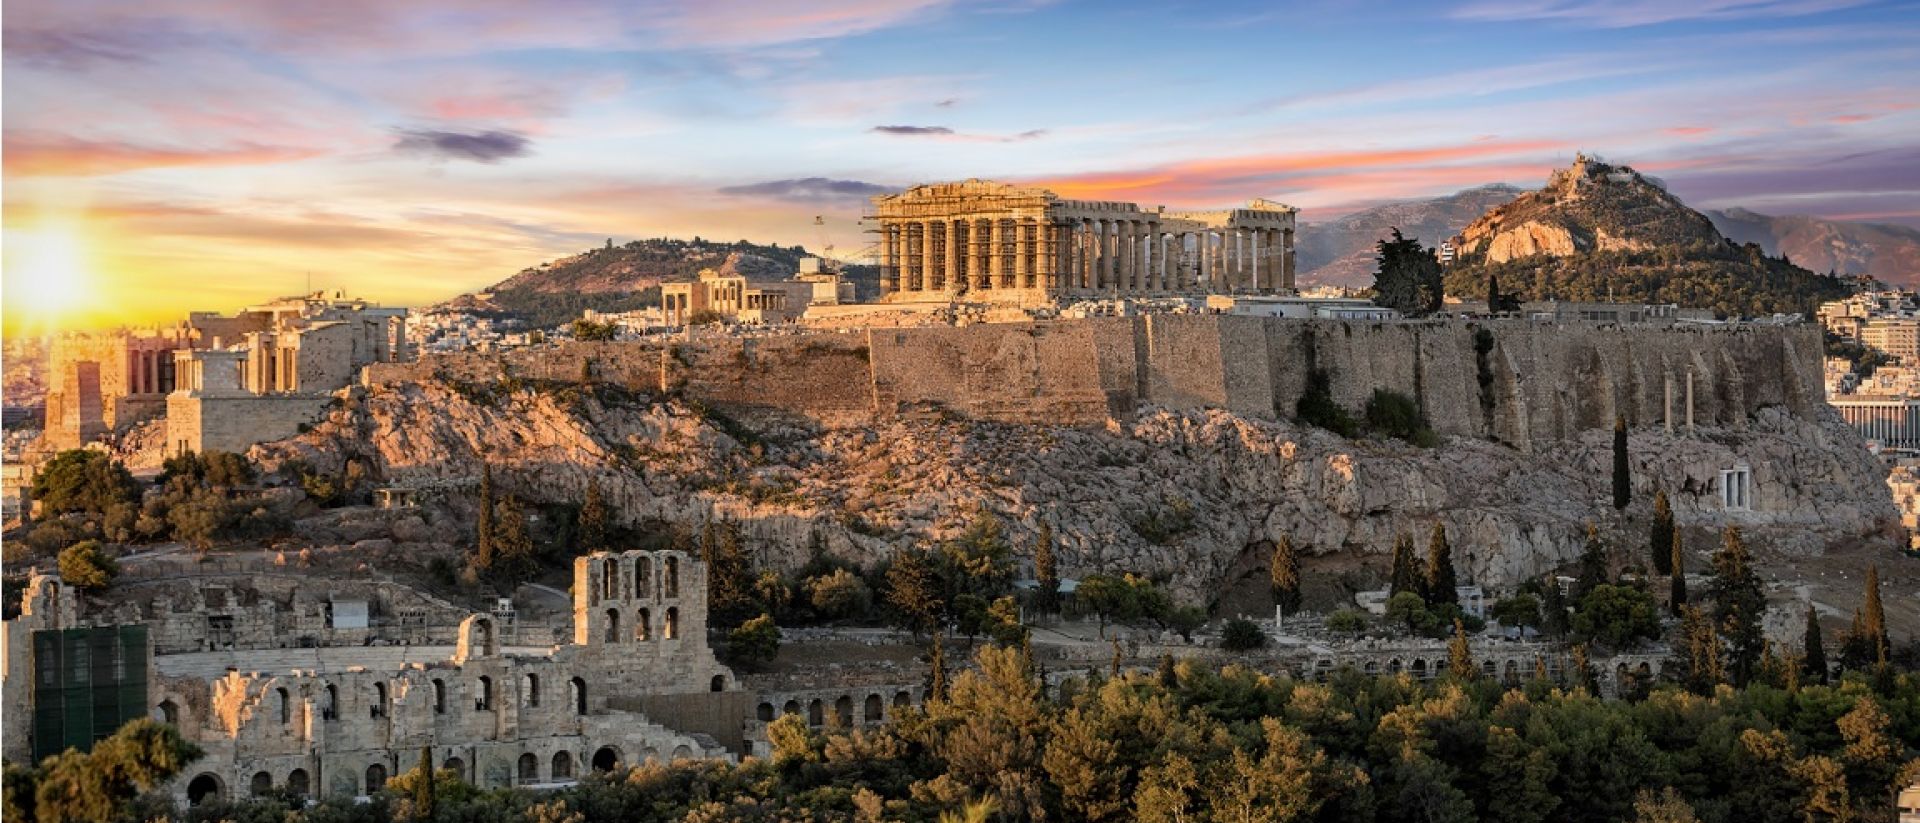 Atenas quiere volver ser una referencia turística internacional | Expreso